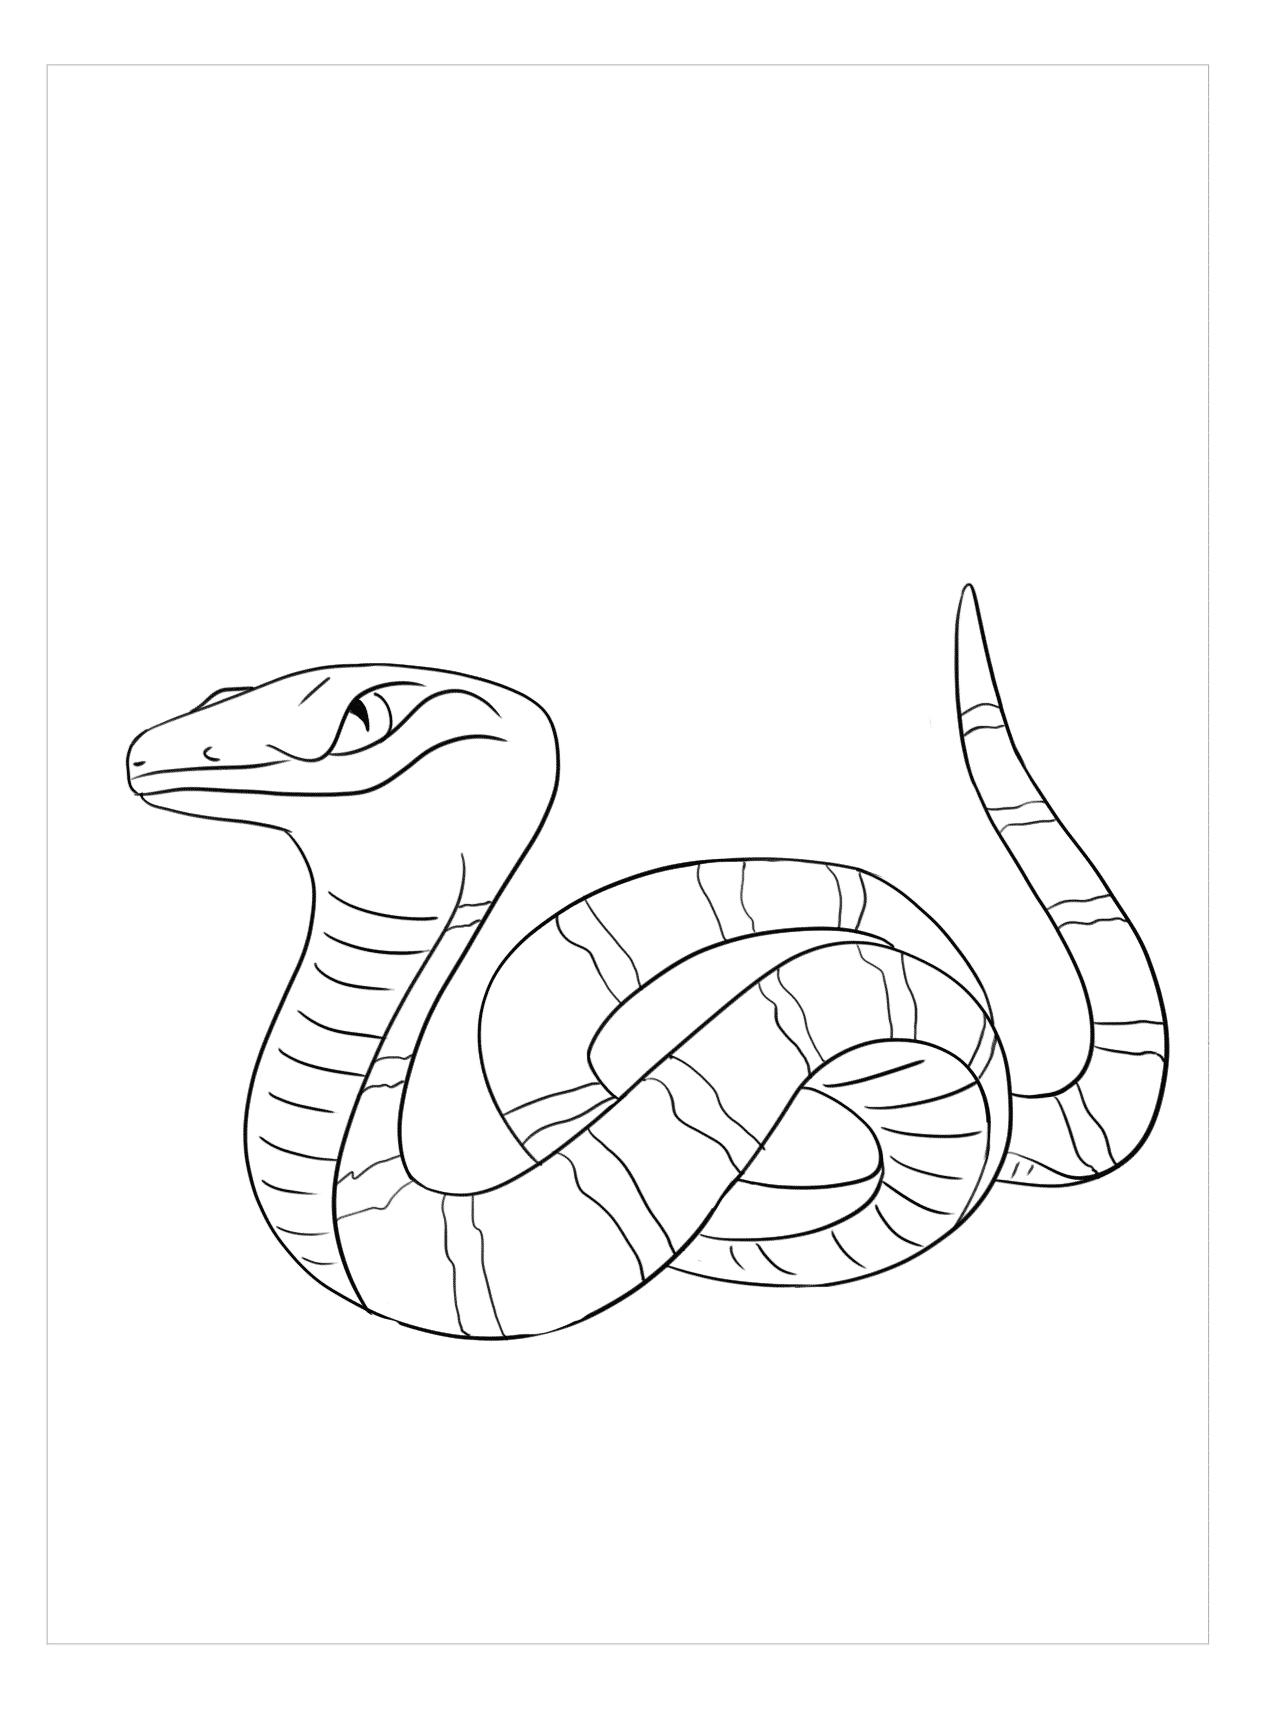 Hình vẽ con rắn: Đắm mình trong những hình ảnh đẹp về con rắn, đem đến cho bạn một trải nghiệm tuyệt vời về nghệ thuật vẽ. Hãy nhìn vào từng chi tiết của các hình ảnh đẹp và cảm nhận được sự đầy sức sống của chúng.